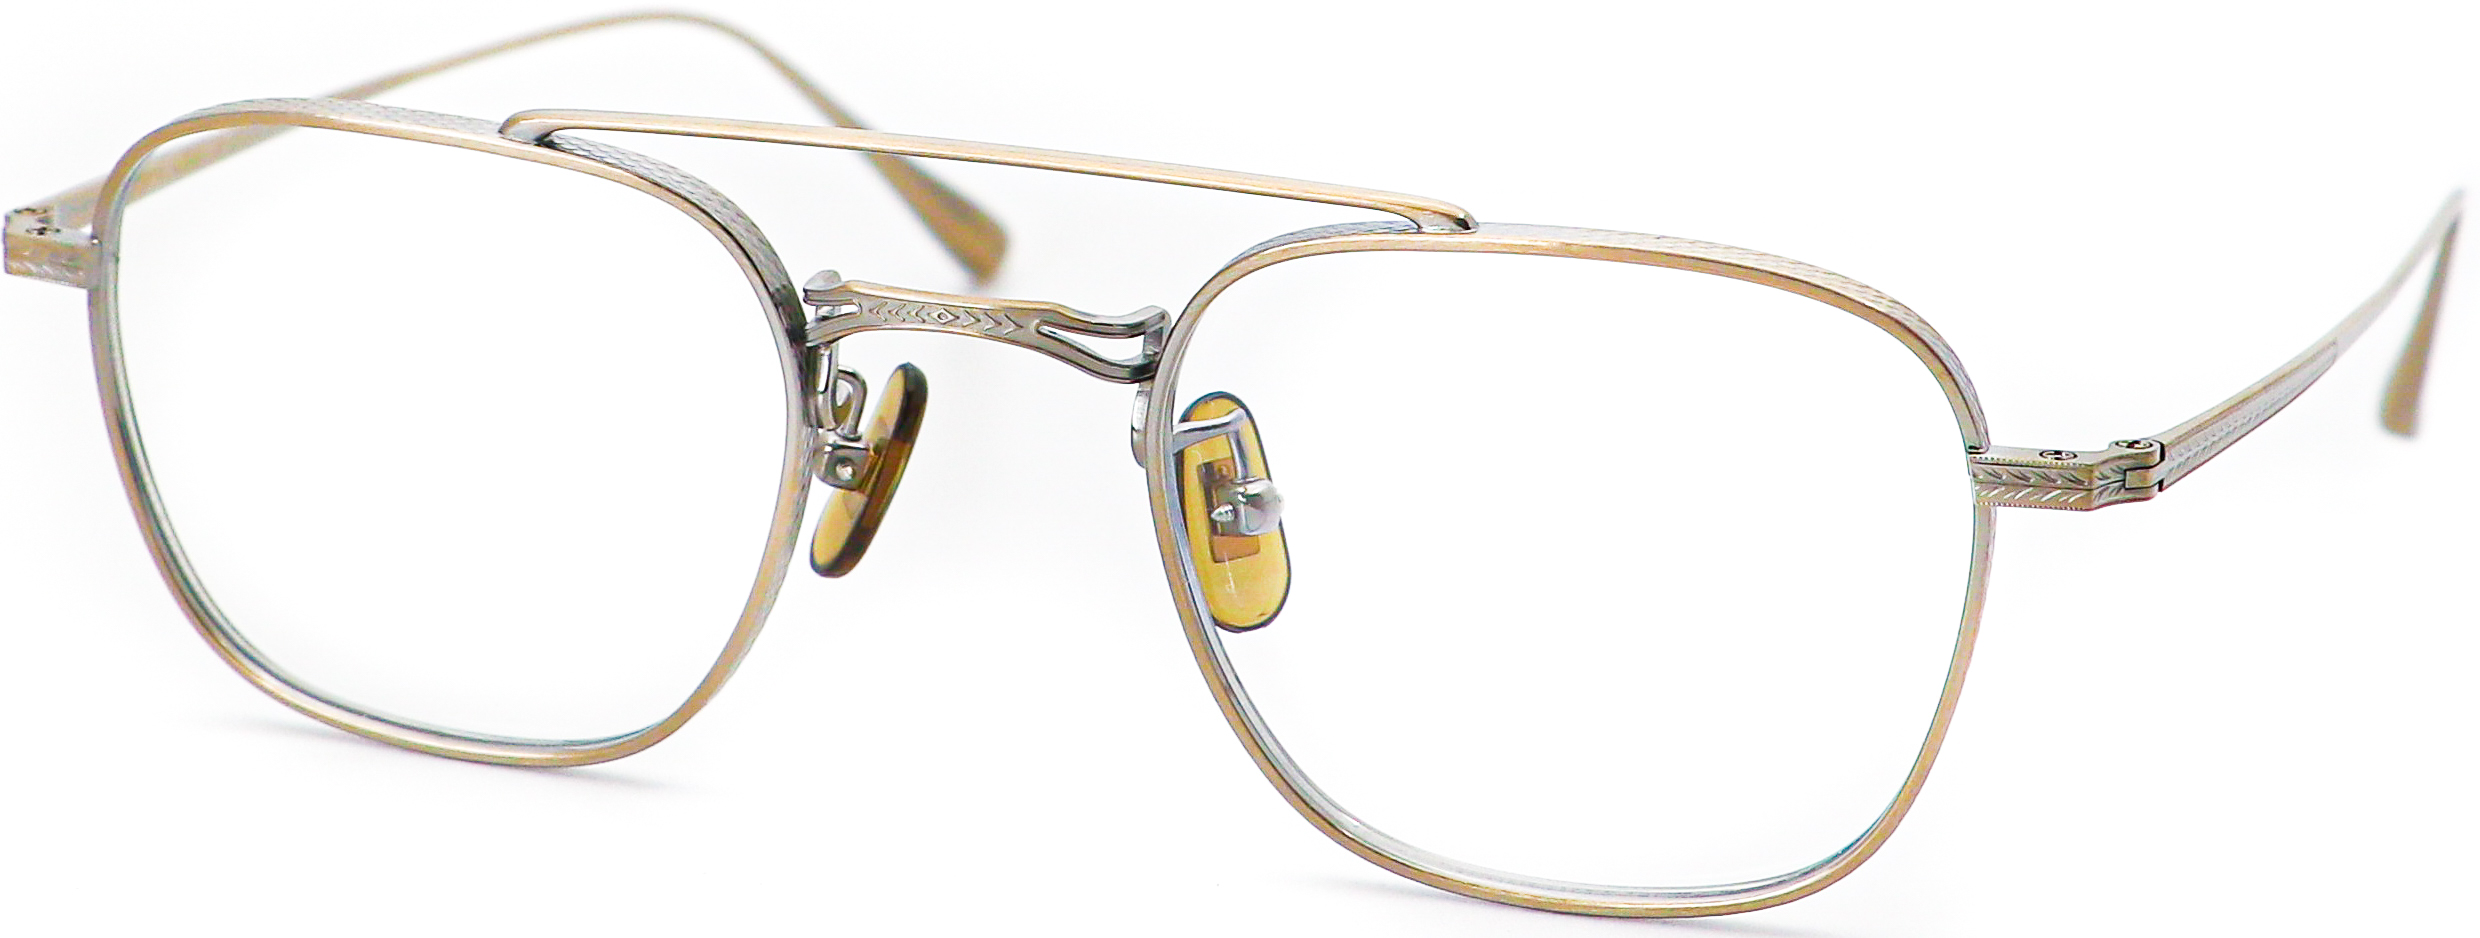 眼鏡のカラータイプC-3 At-Gold